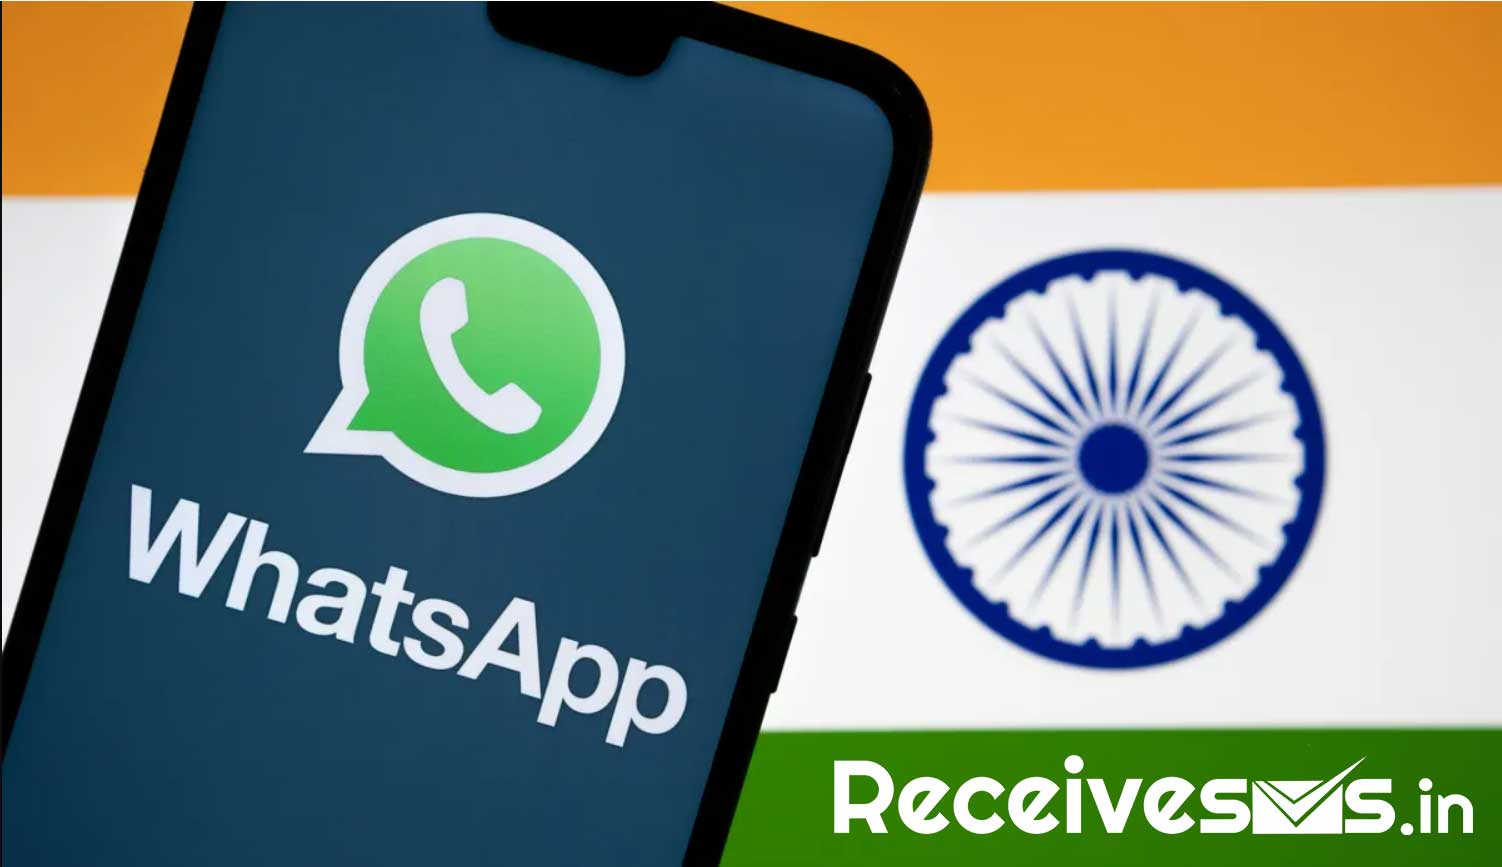 Tumanggap ng SMS para I-verify ang WhatsApp India Account